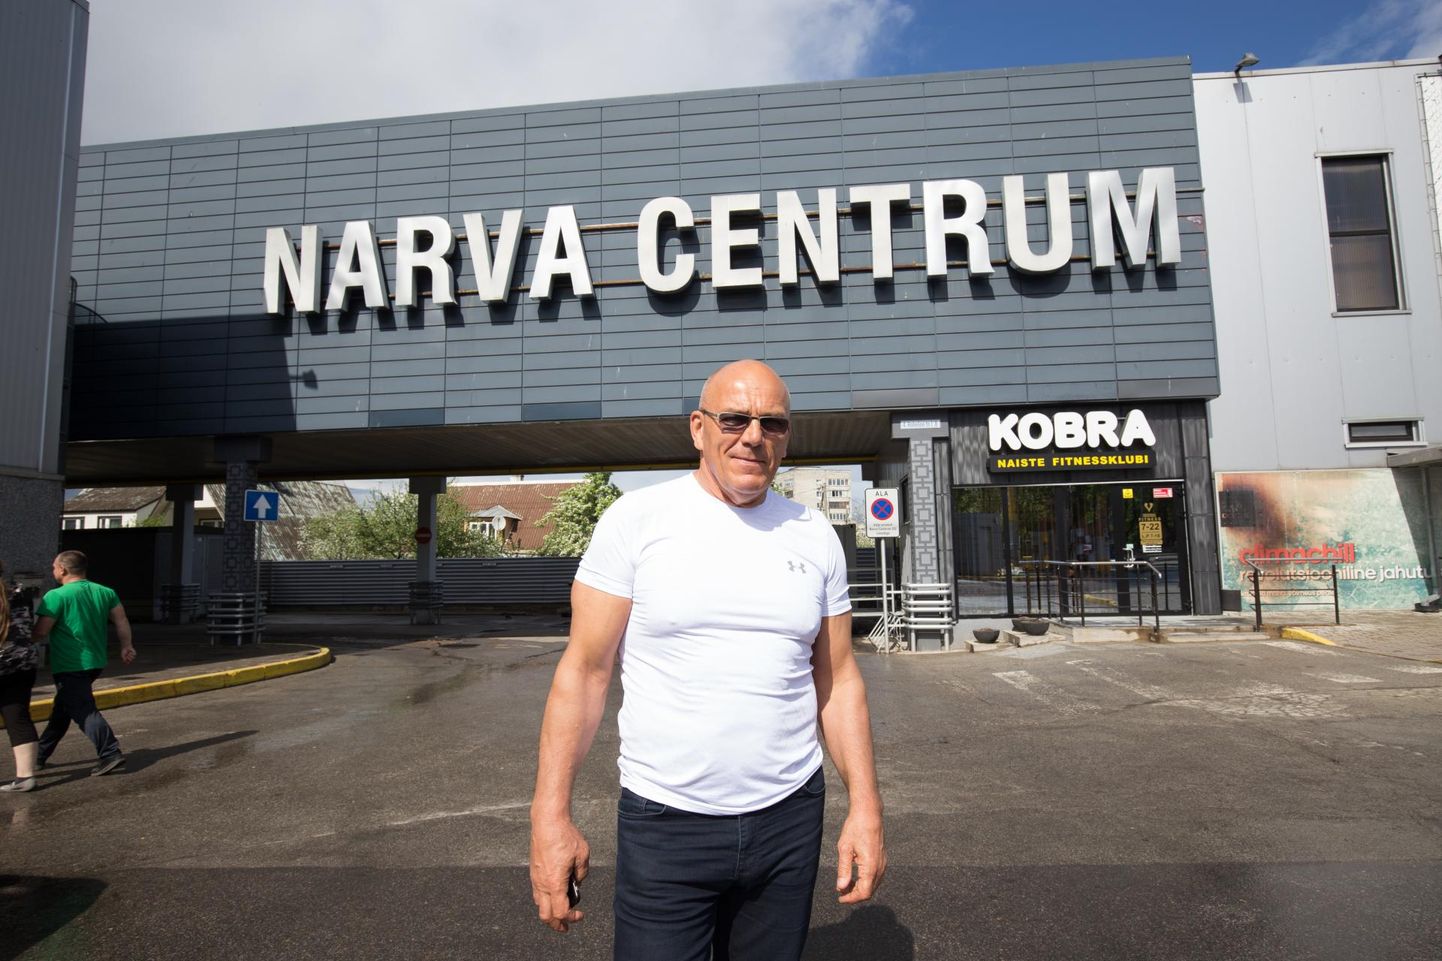 Oleg Grossi firmal on Narvas viis kinnistut. Ühel neist asub Narva Centrum, kus samuti kavatsetakse avada temanimelisse jaeketti kuuluv toidukauplus.